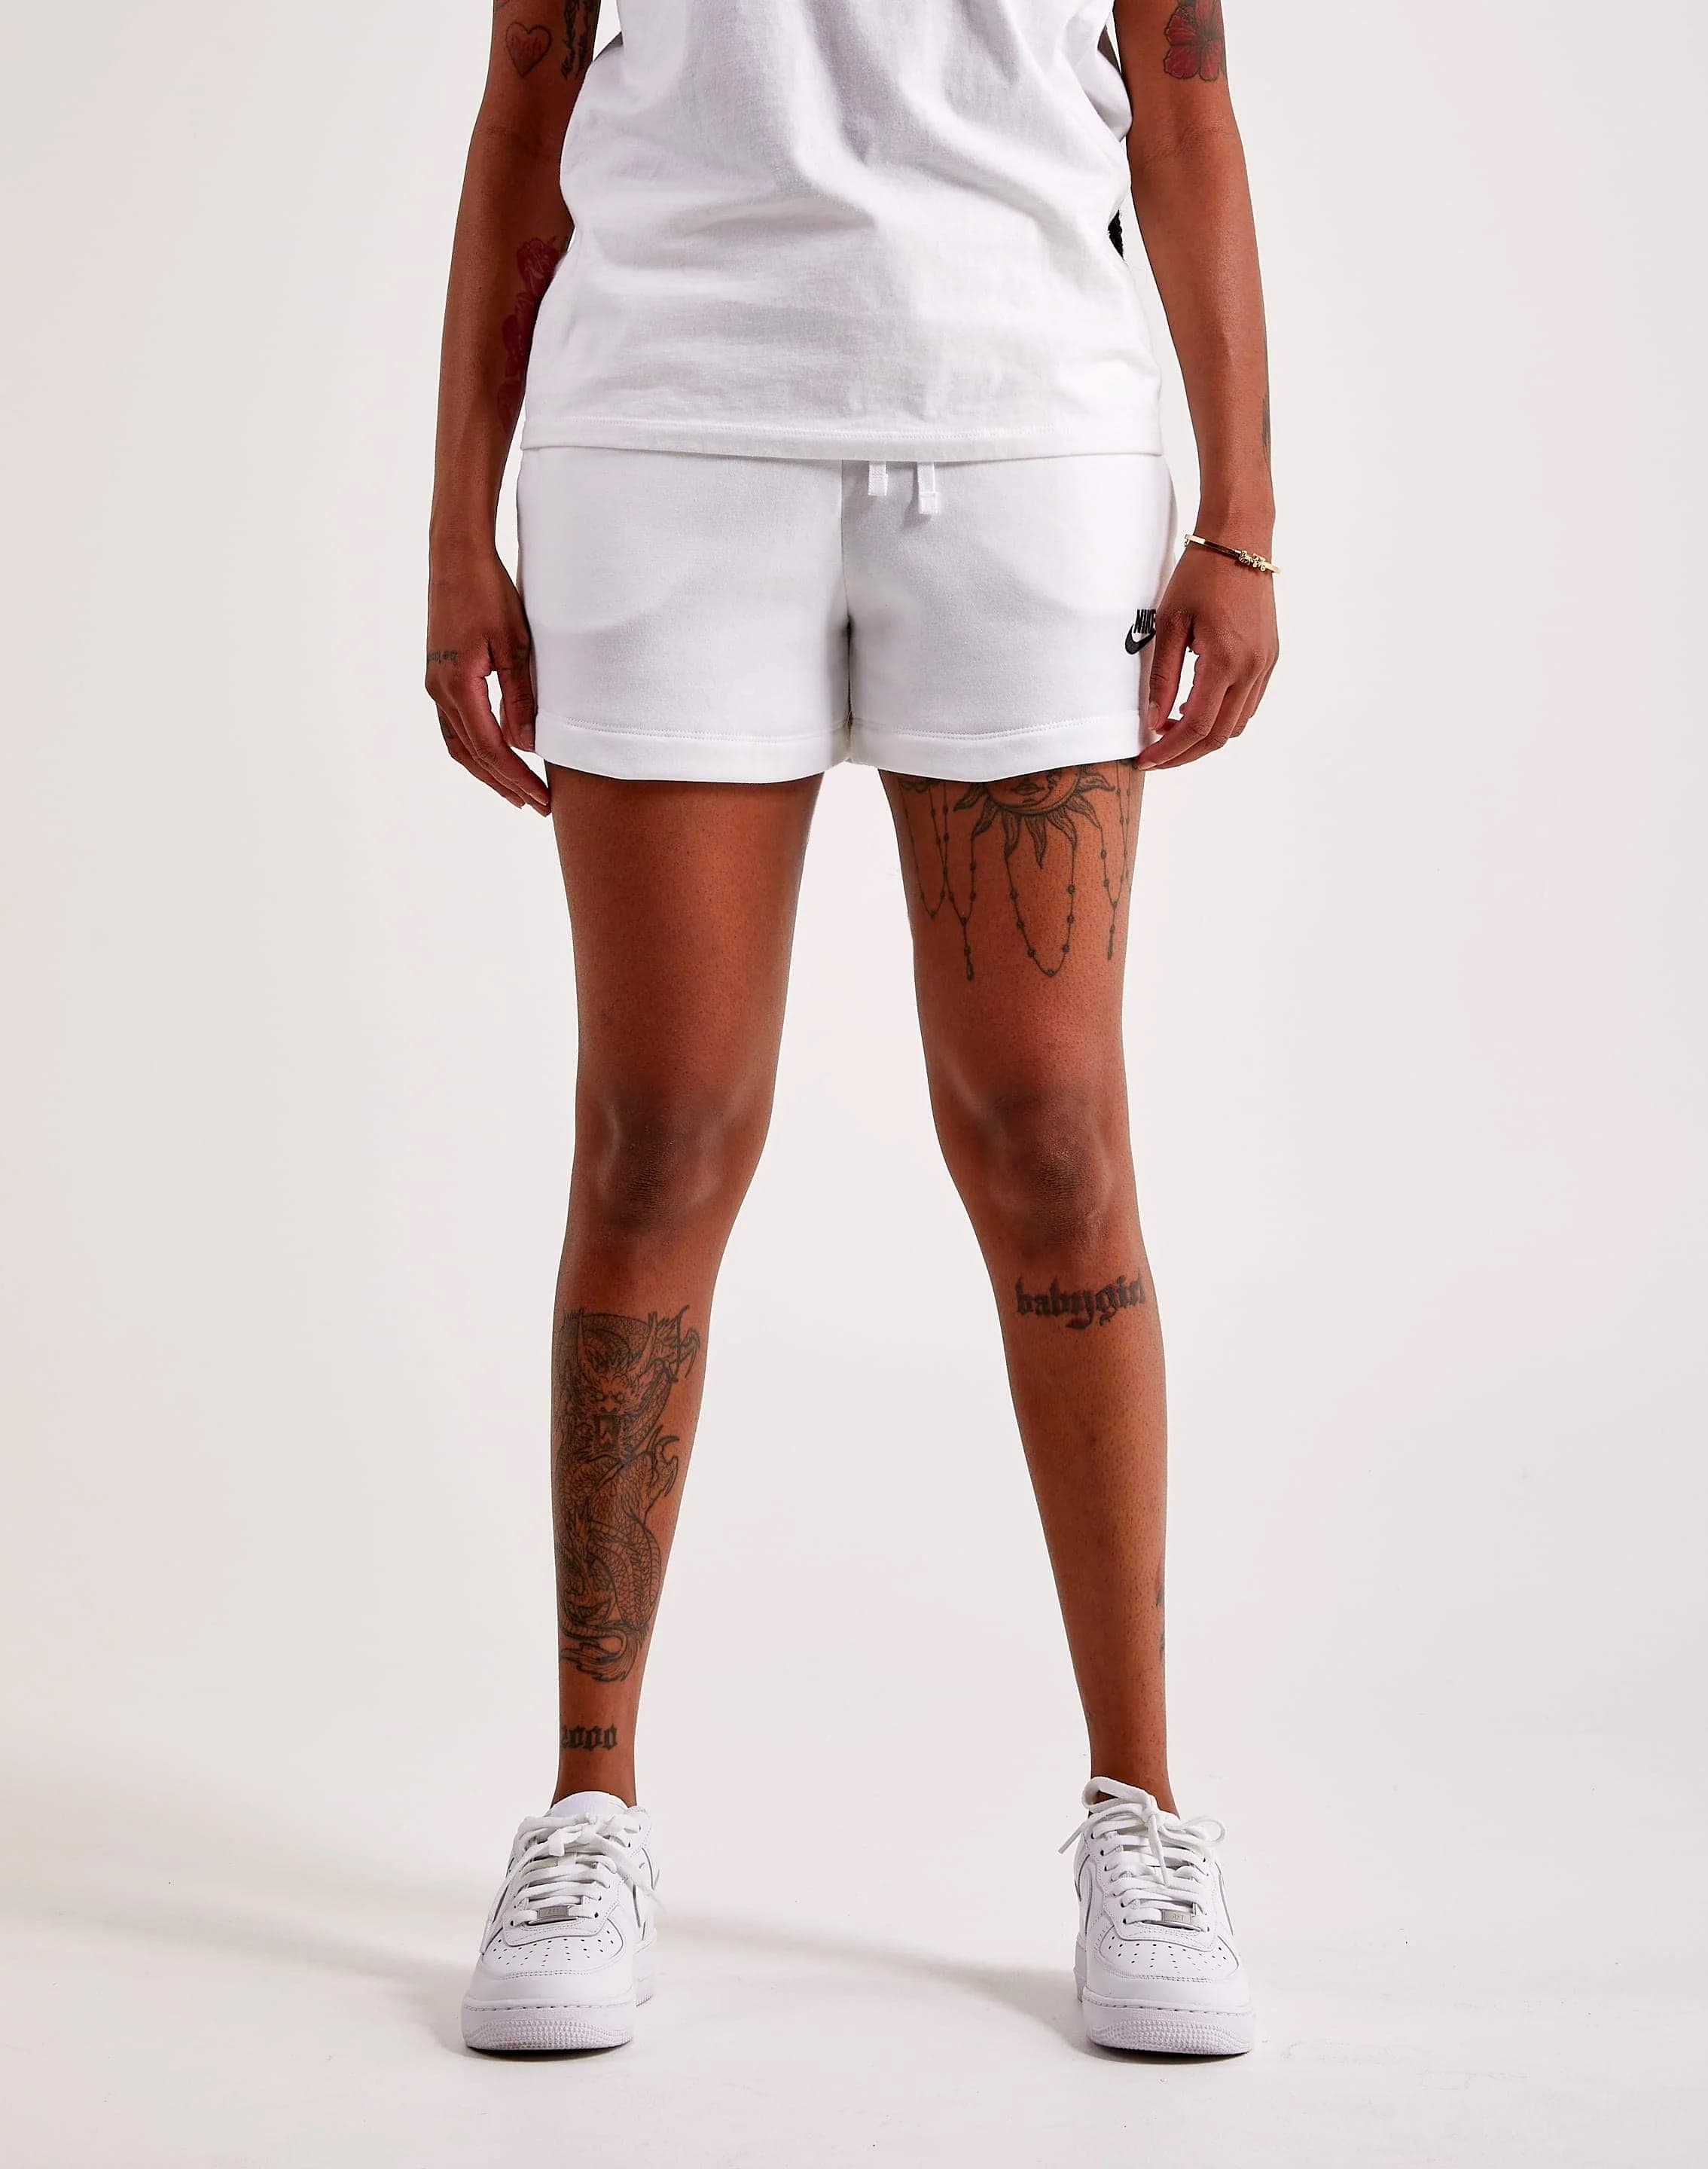 Nike Womens Club Fleece MID-Rise Shorts (White/Black, DQ5802-100